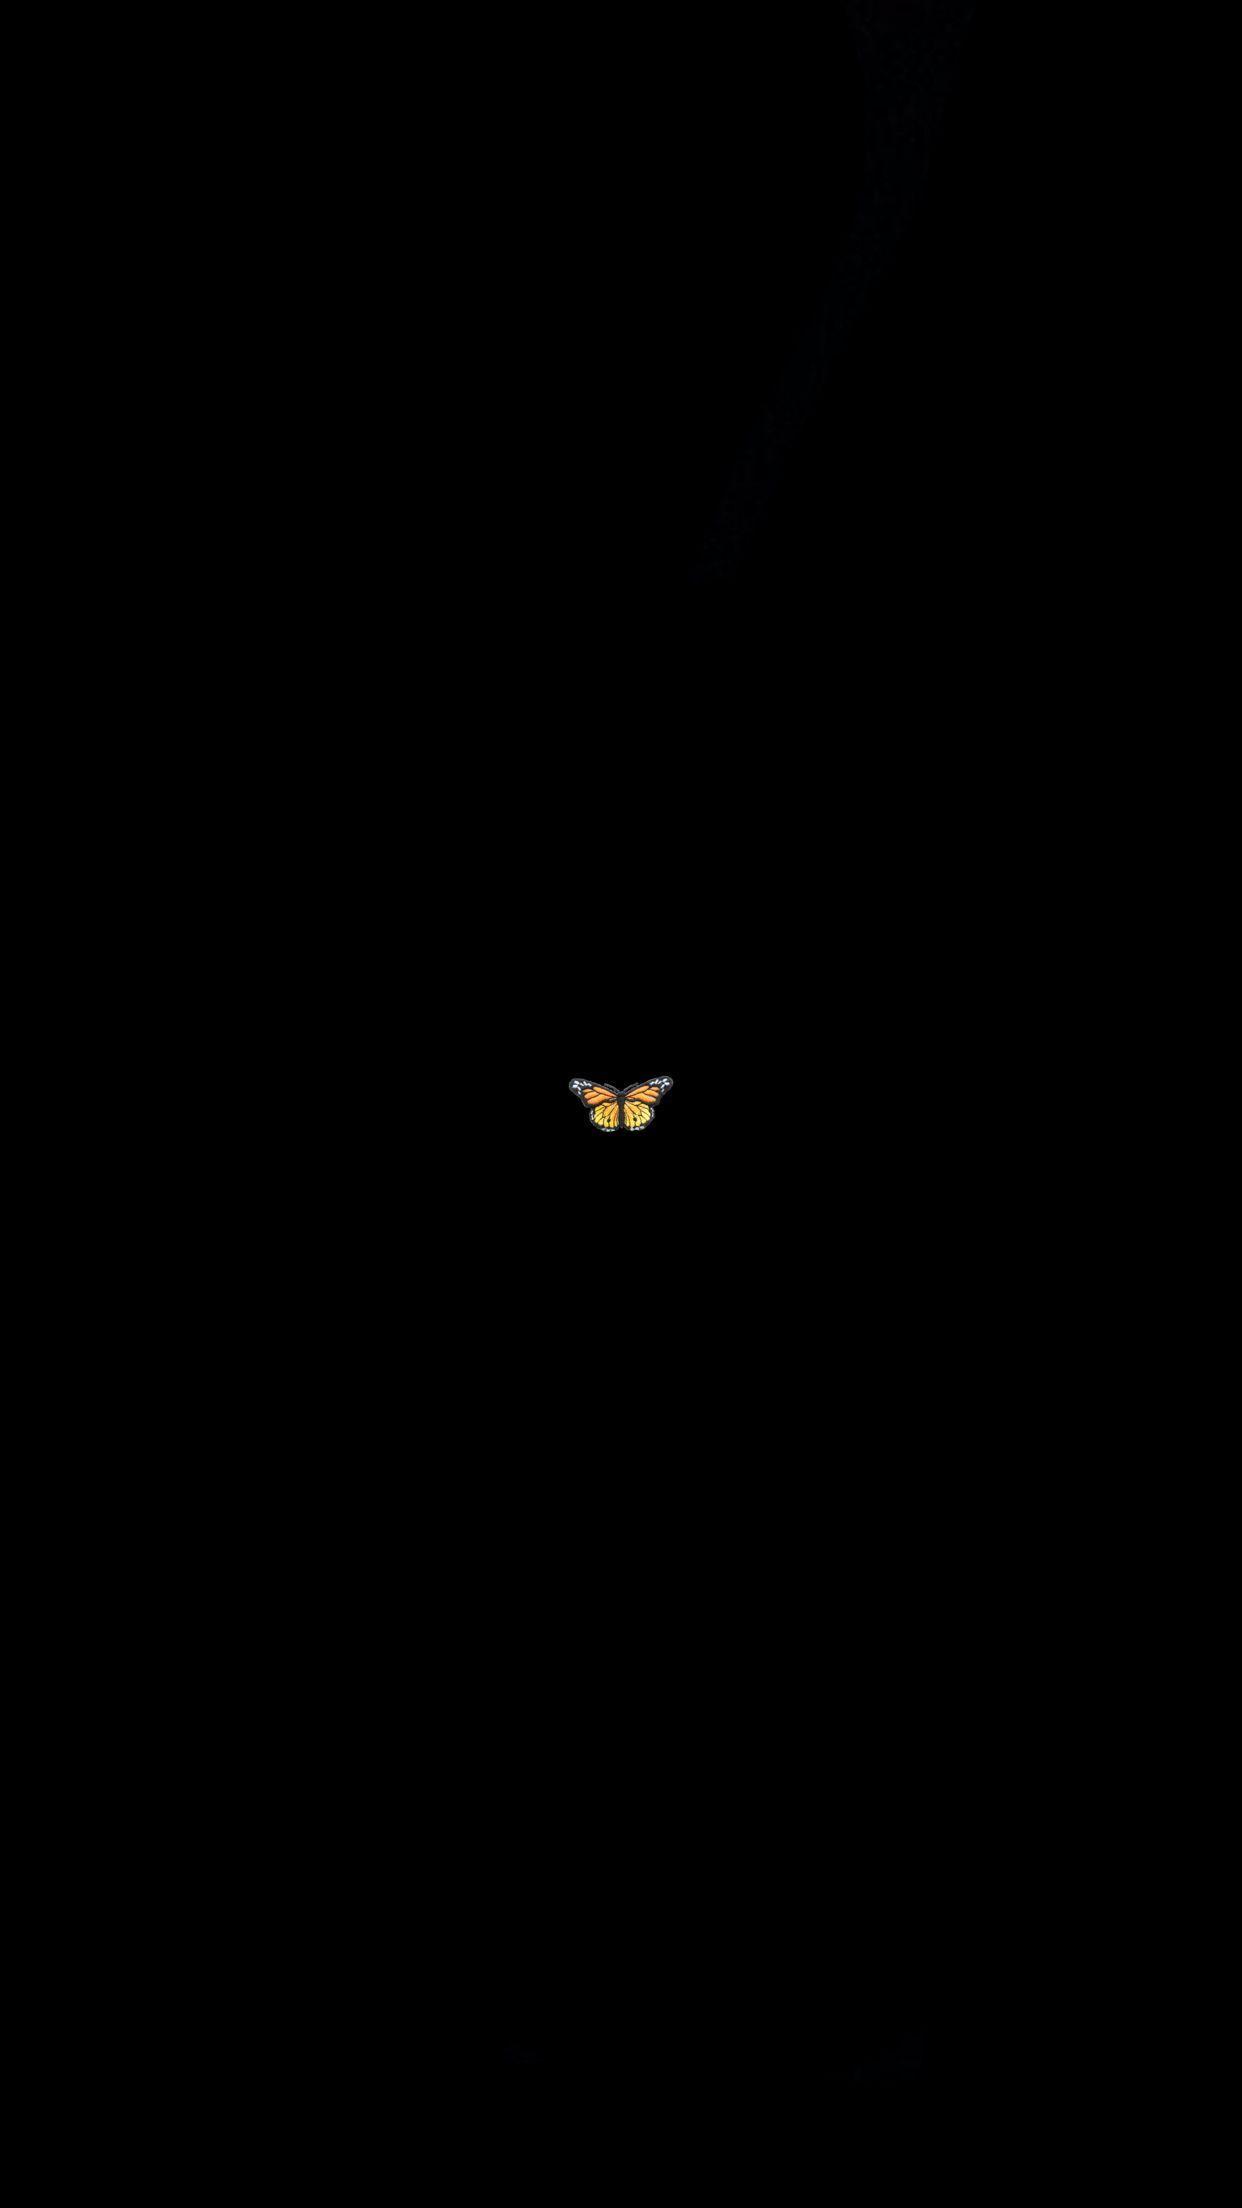 Hình nền con bướm 1242x2208 năm 2020. Hình nền thẩm mỹ màu đen, Hình nền nền đen, Hình nền điện thoại màu đen